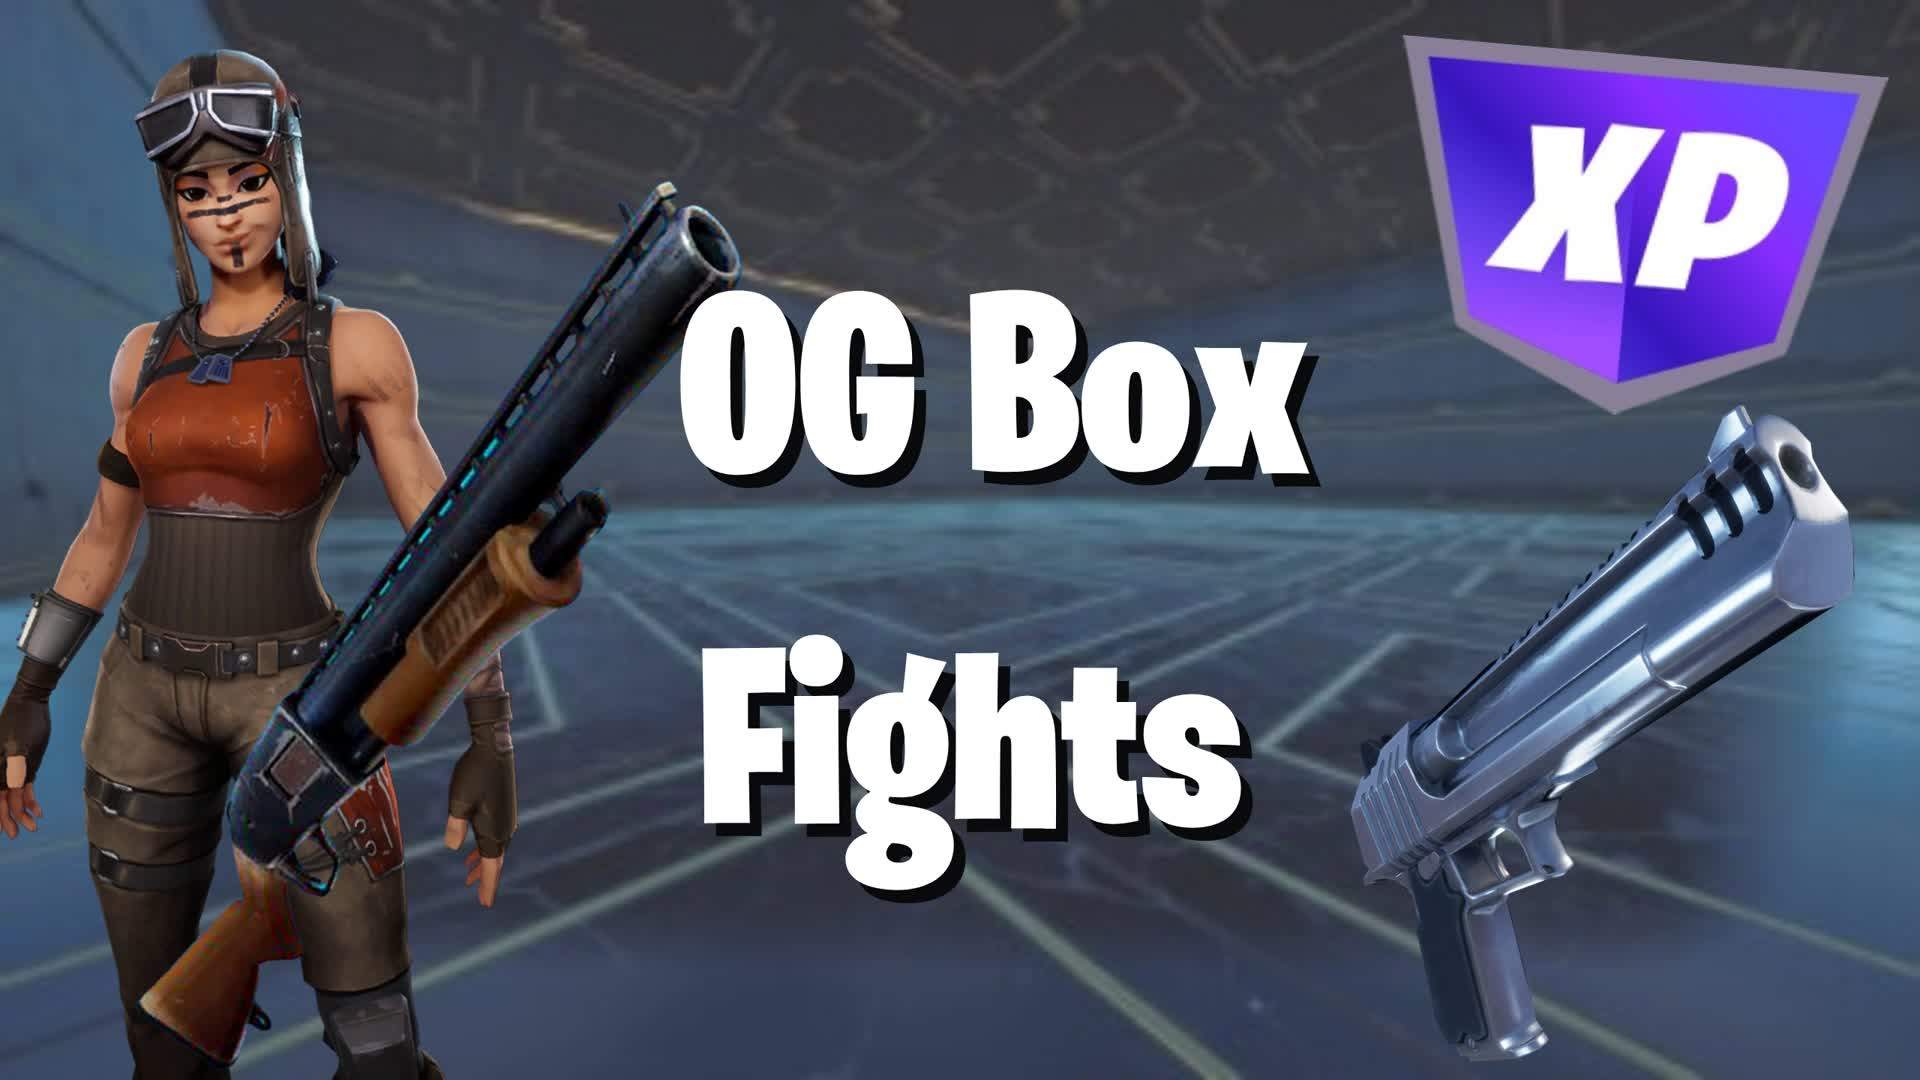 OG BOX FIGHTS 😍 💯